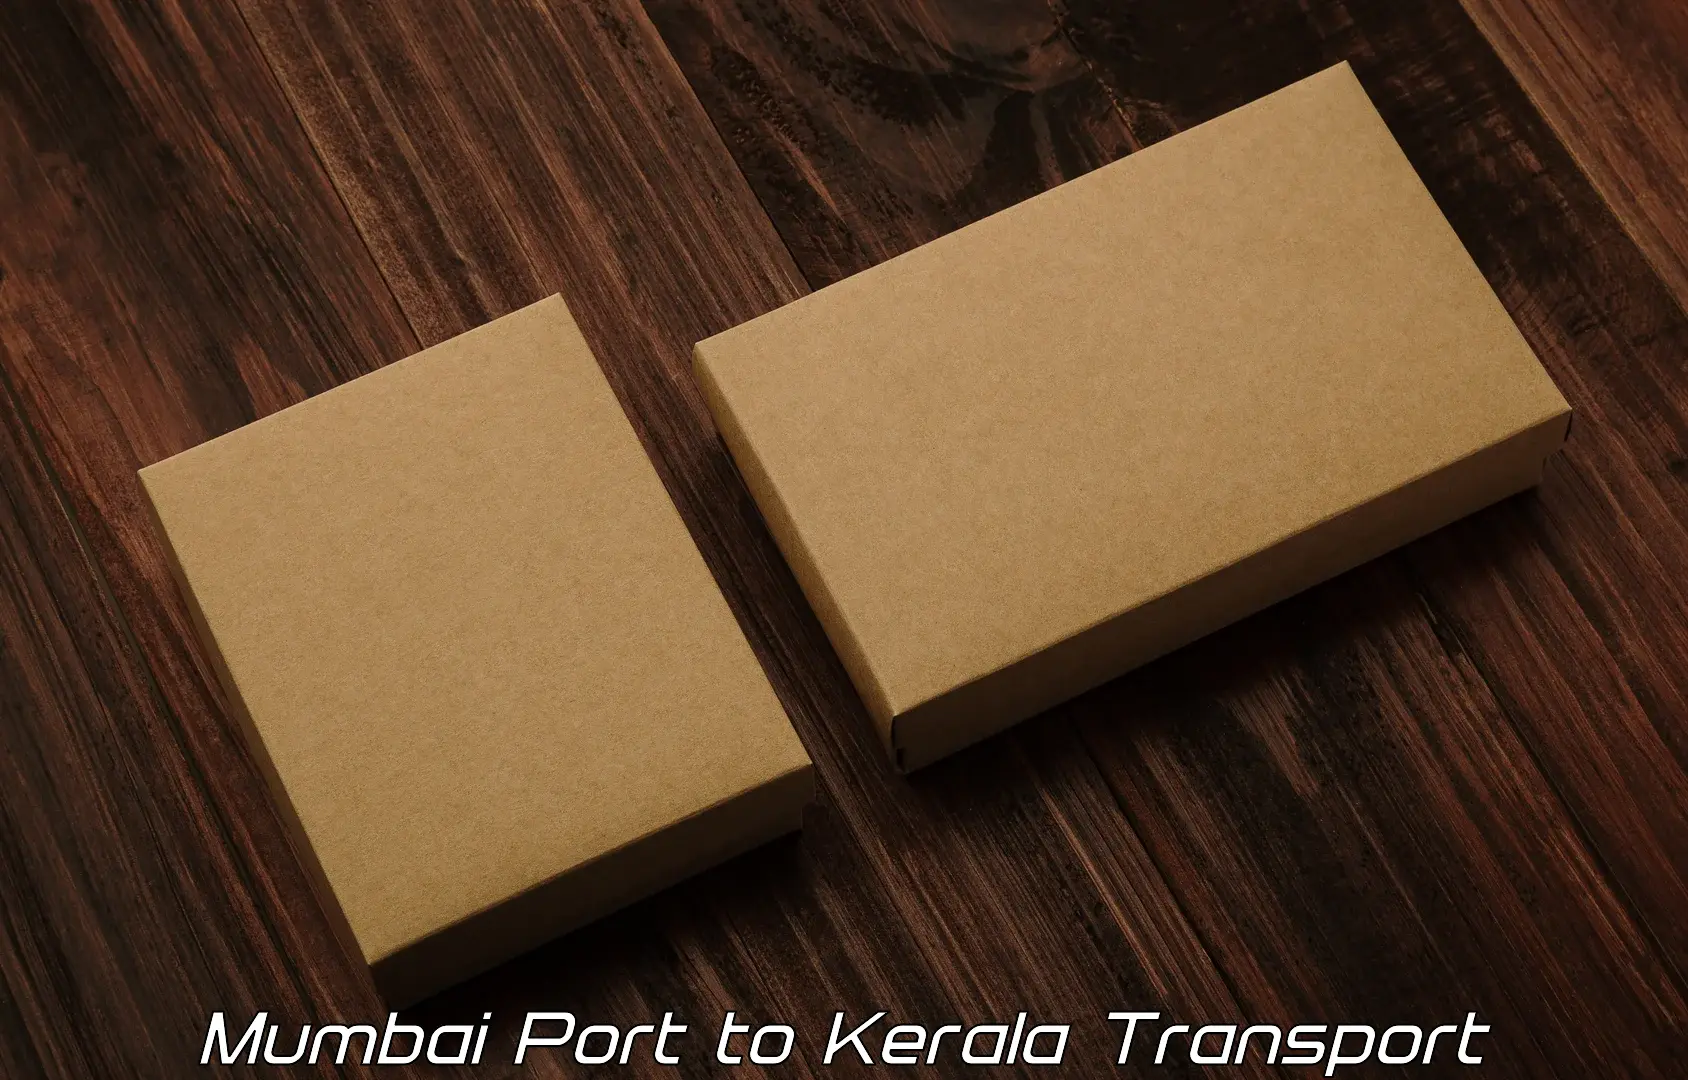 Furniture transport service Mumbai Port to Cherpulassery